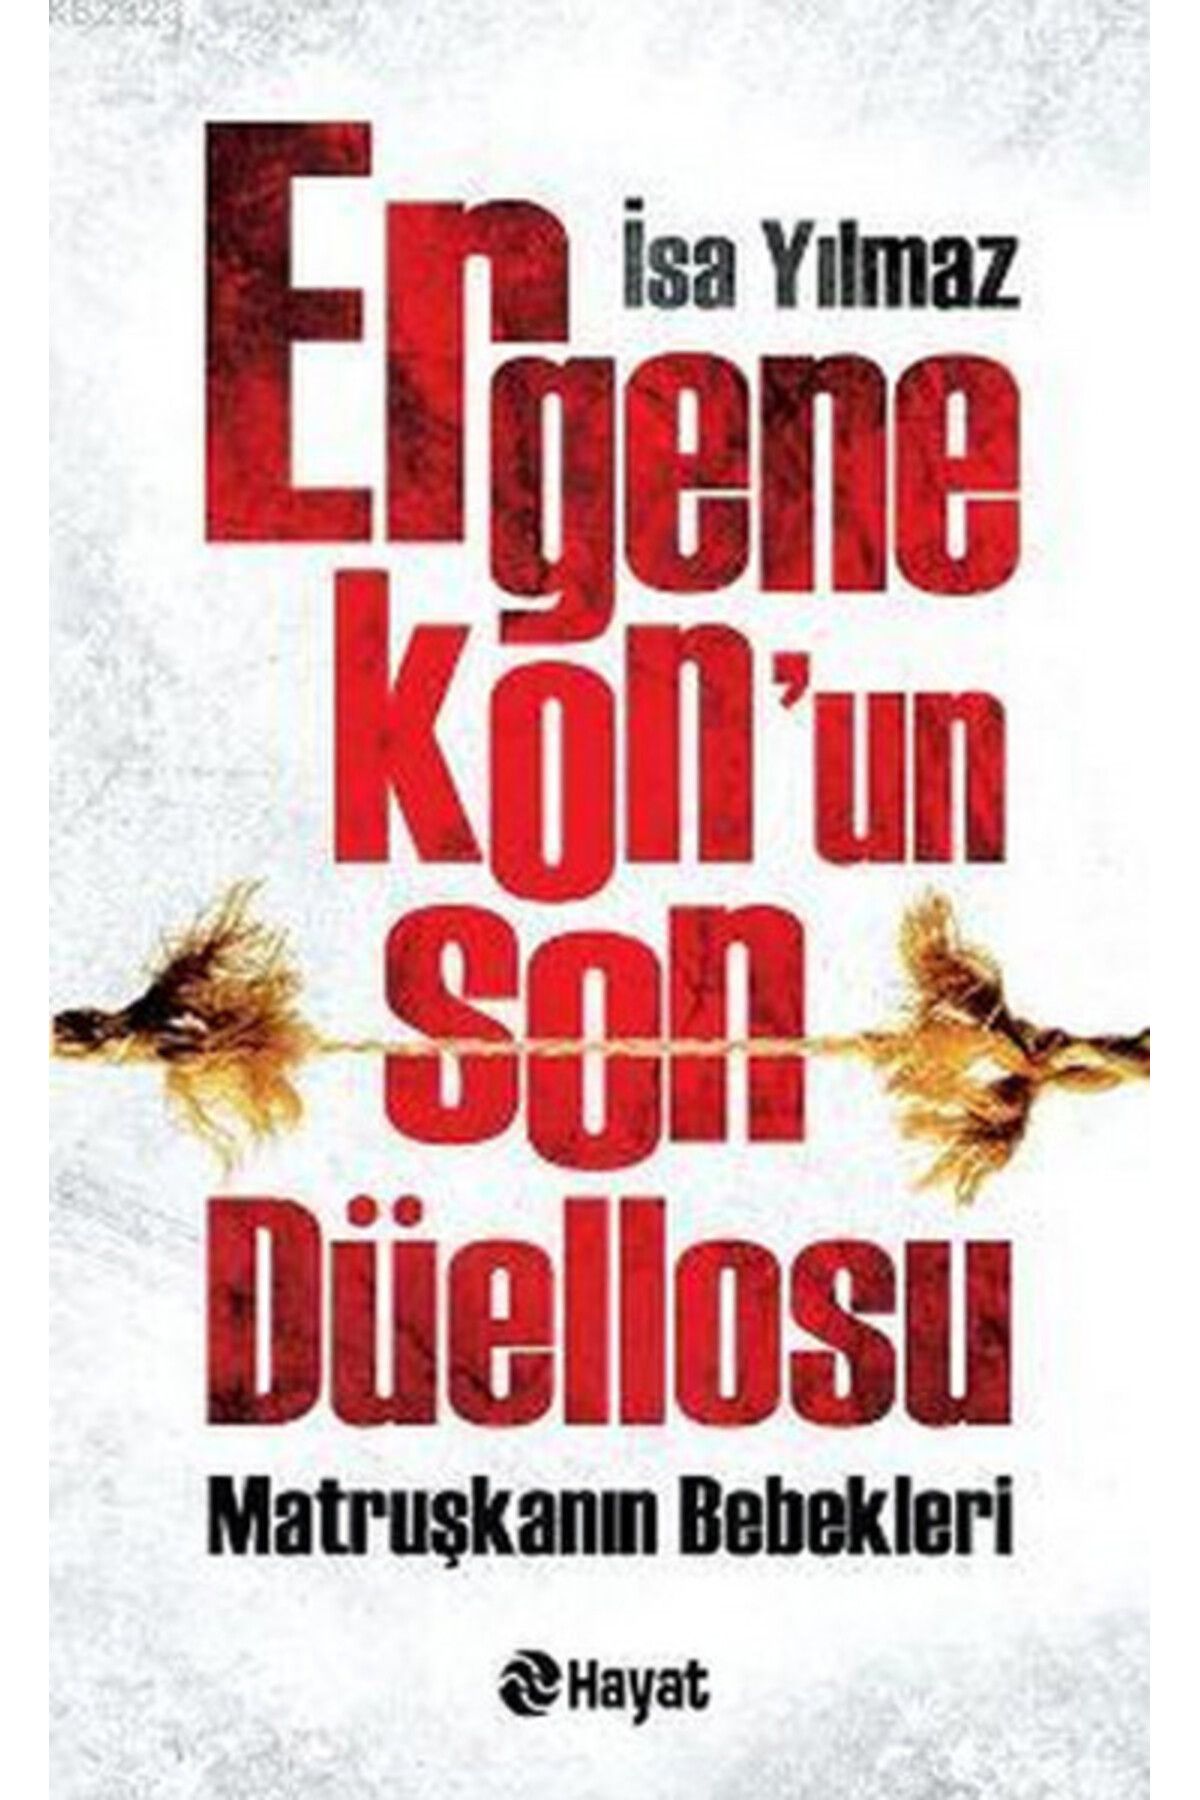 Hayat Yayınları Ergenekon'un Son Düellosu Matruşkanın Bebekleri